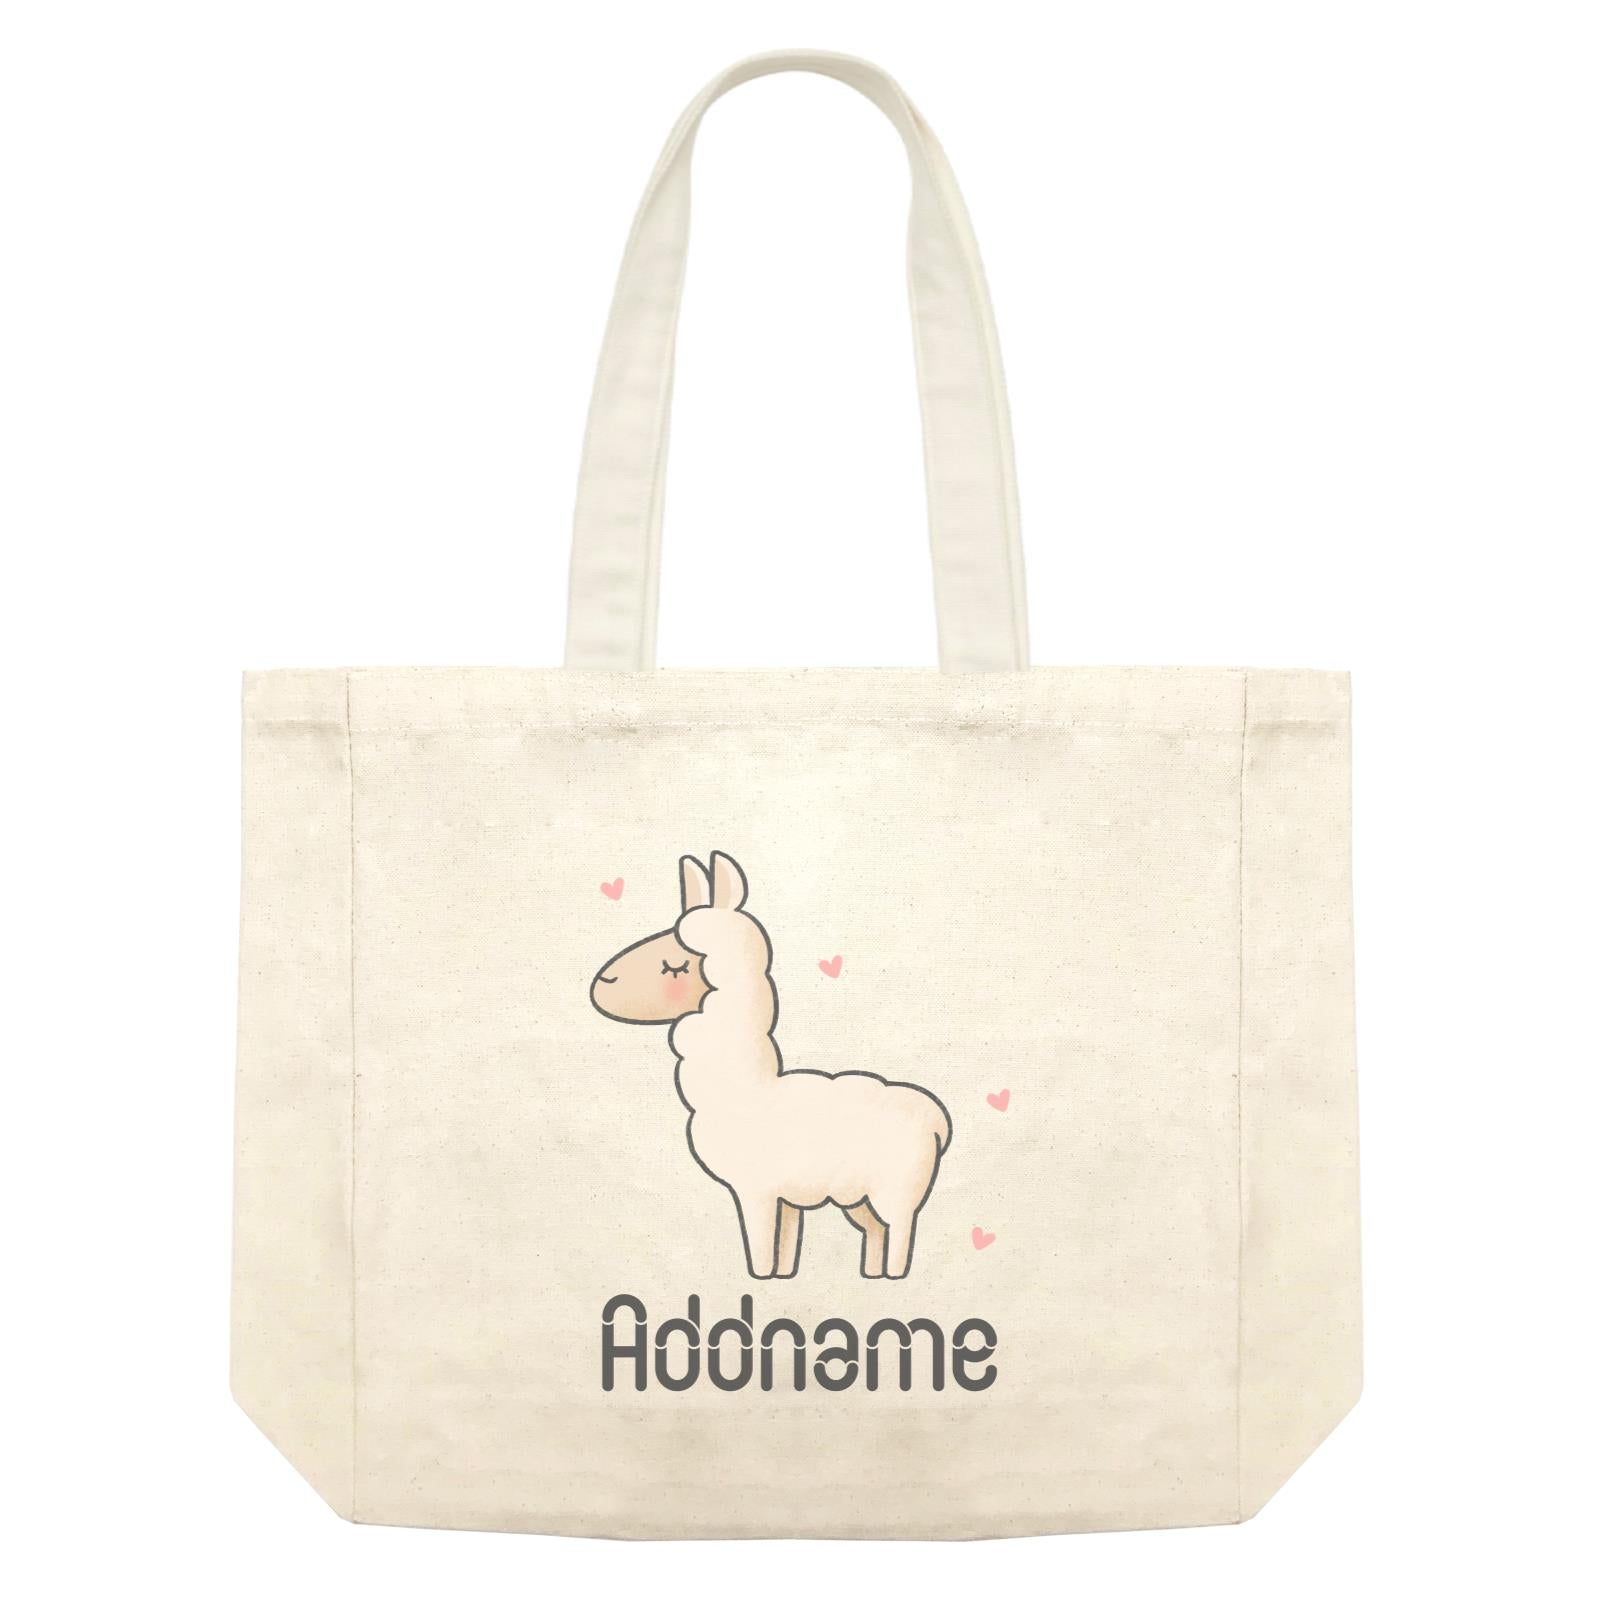 Cute Hand Drawn Style Llama Addname Shopping Bag